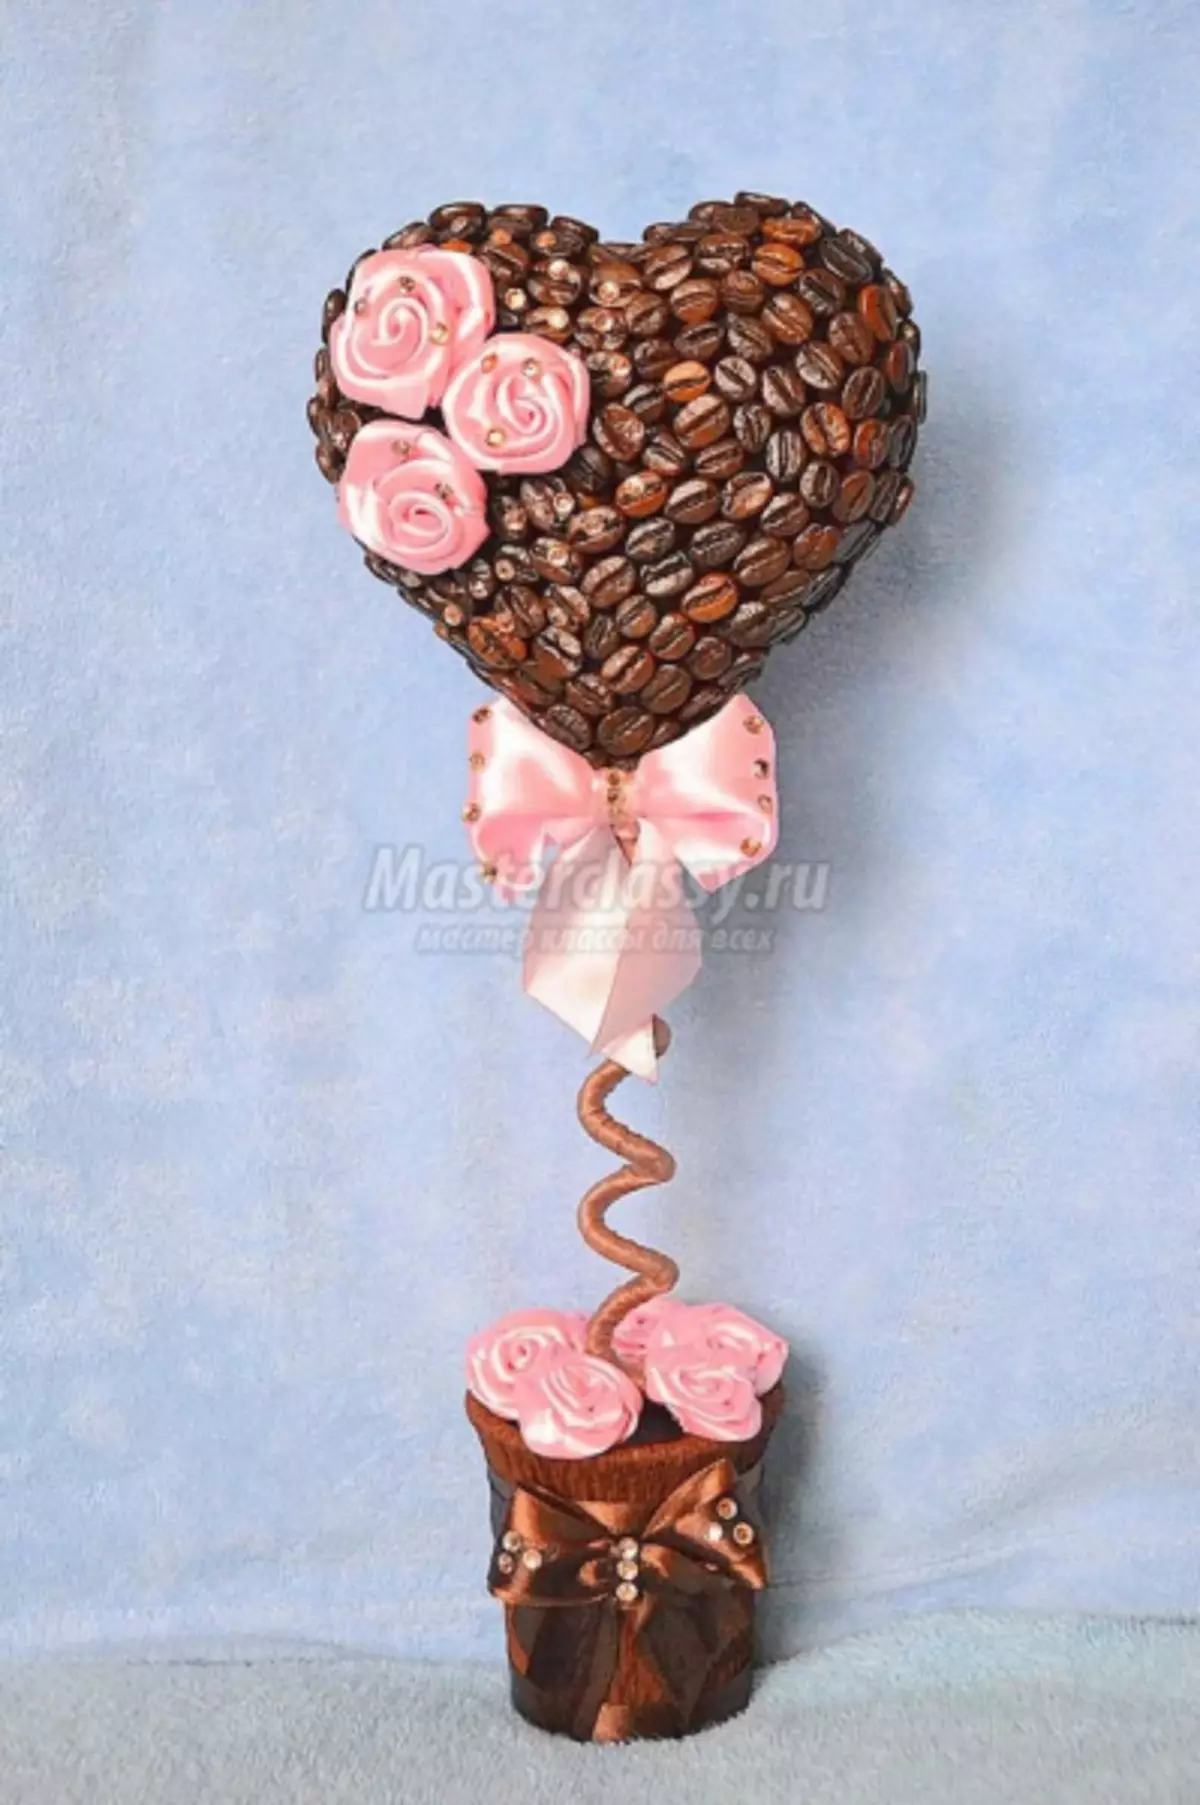 Chủ đề của cà phê và hoa dưới dạng một trái tim với một hình ảnh và video